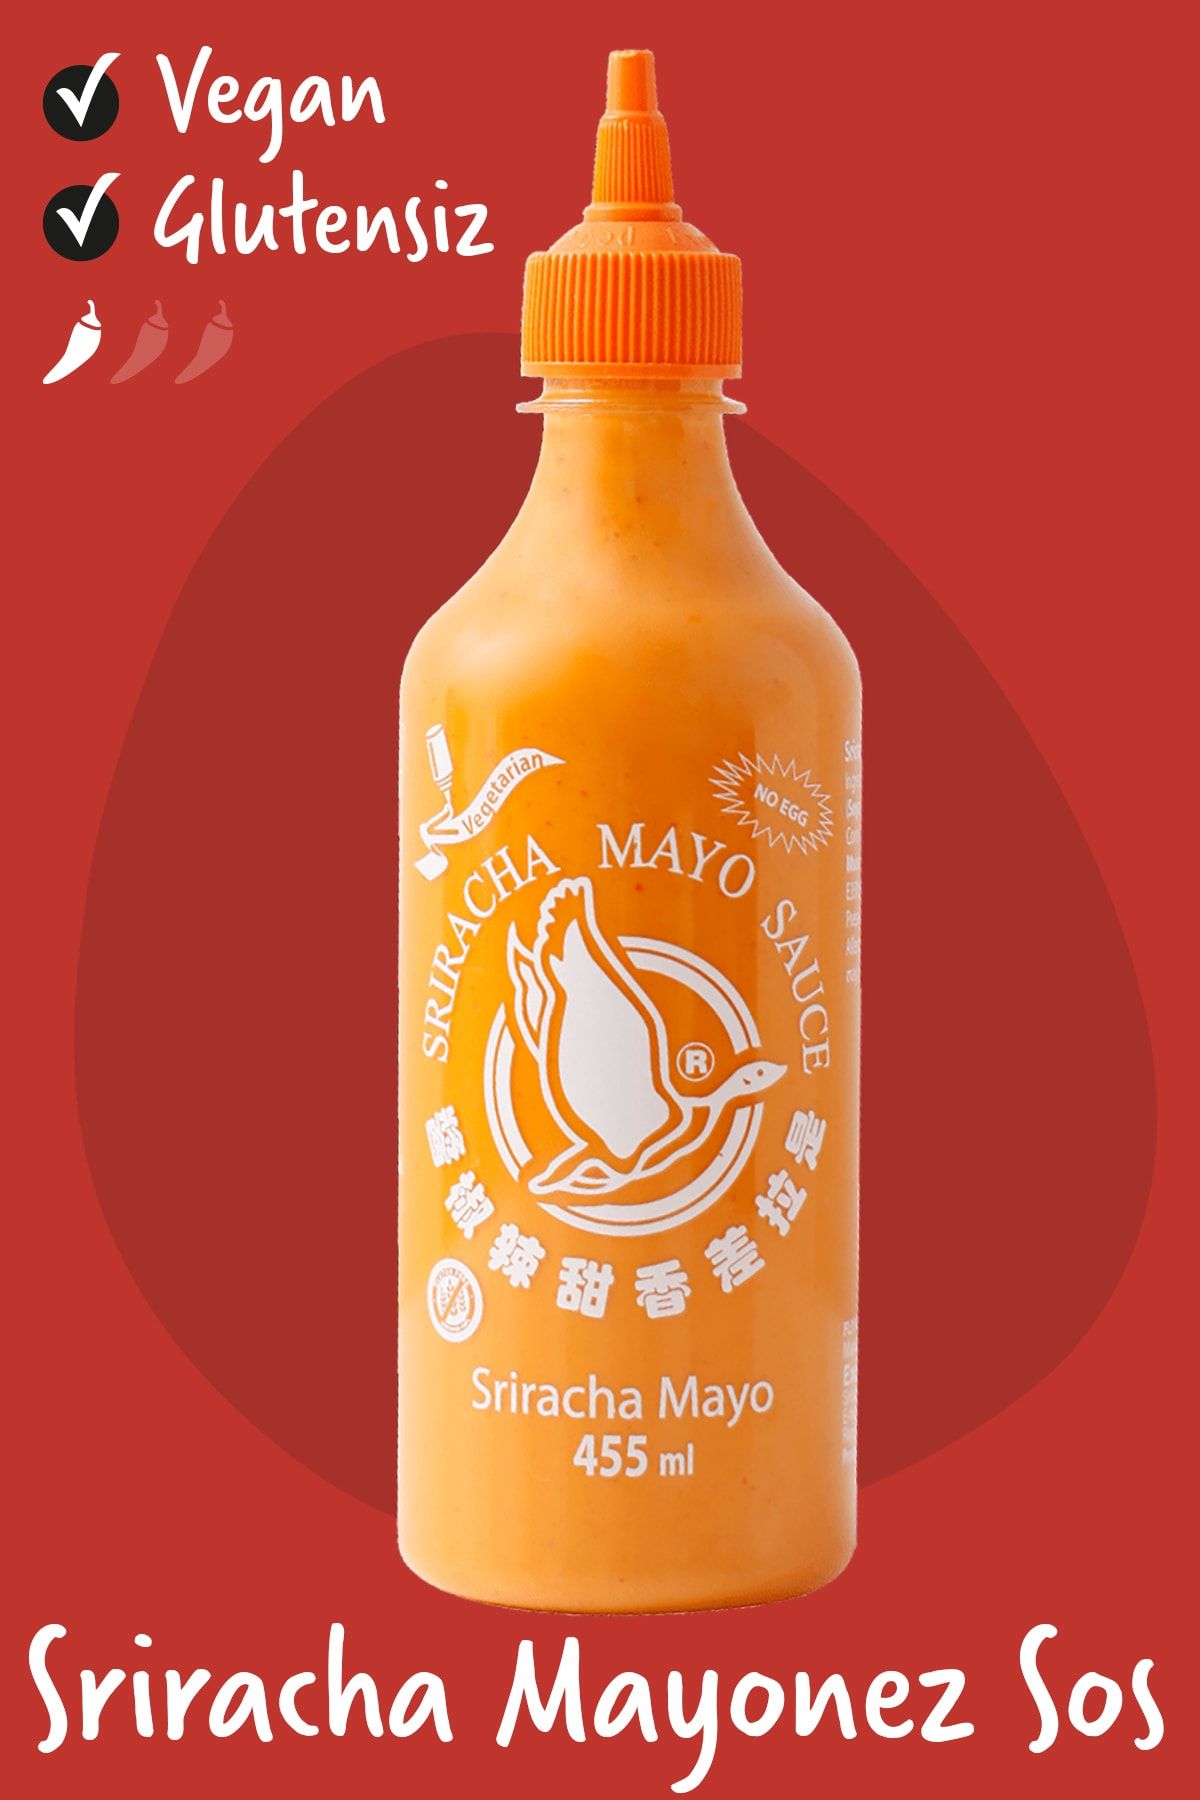 Flying Goose Sriracha Mayo Chili Biberli Sos 455 ml Fiyatı